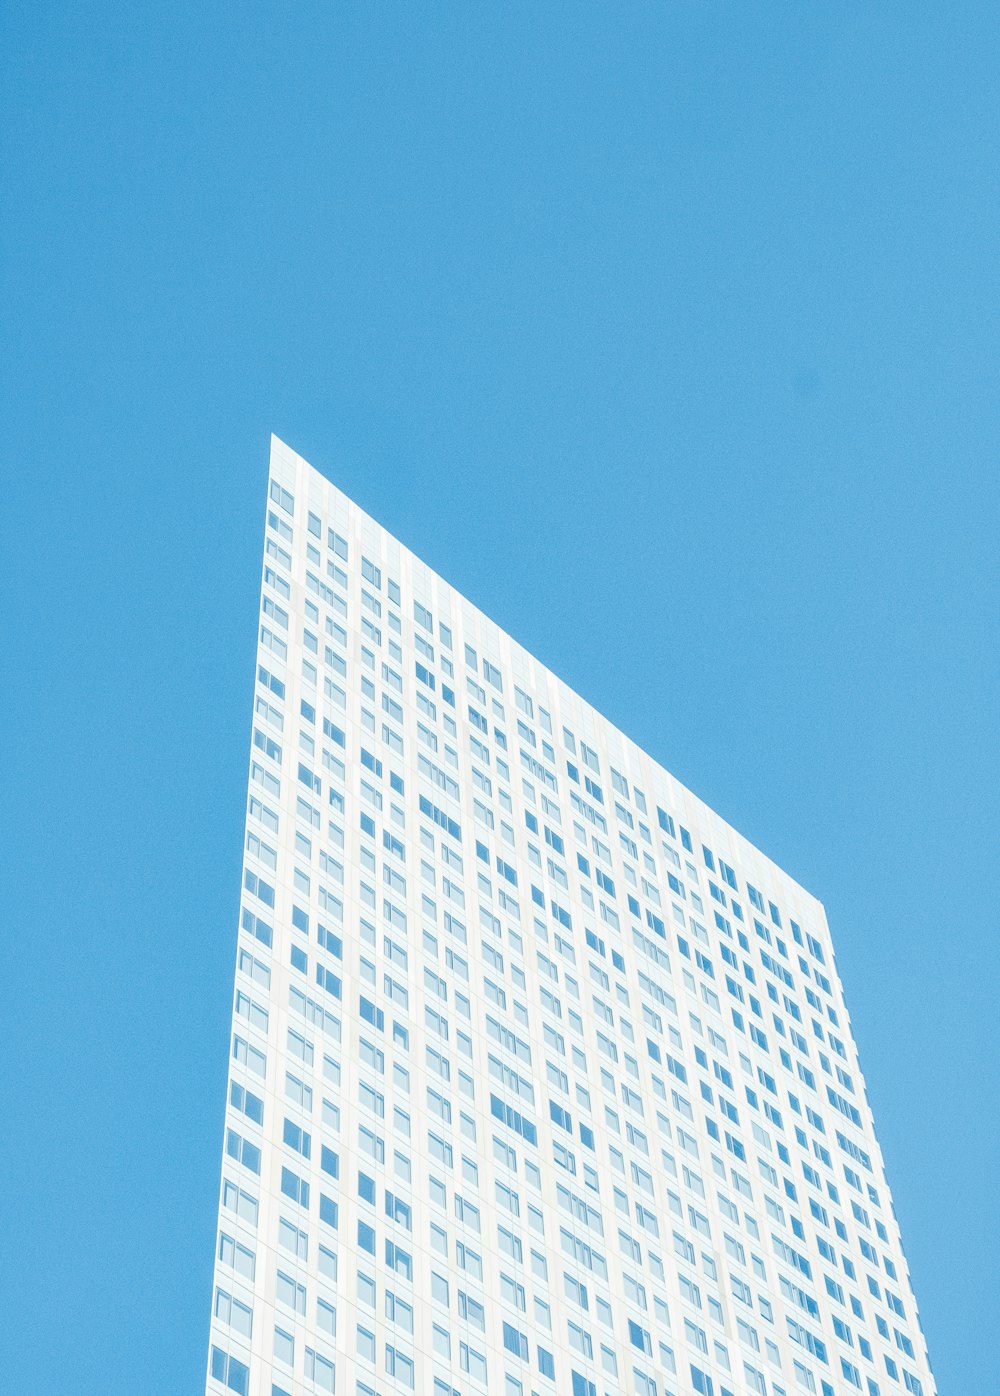 Edificio alto blanco y azul durante el día